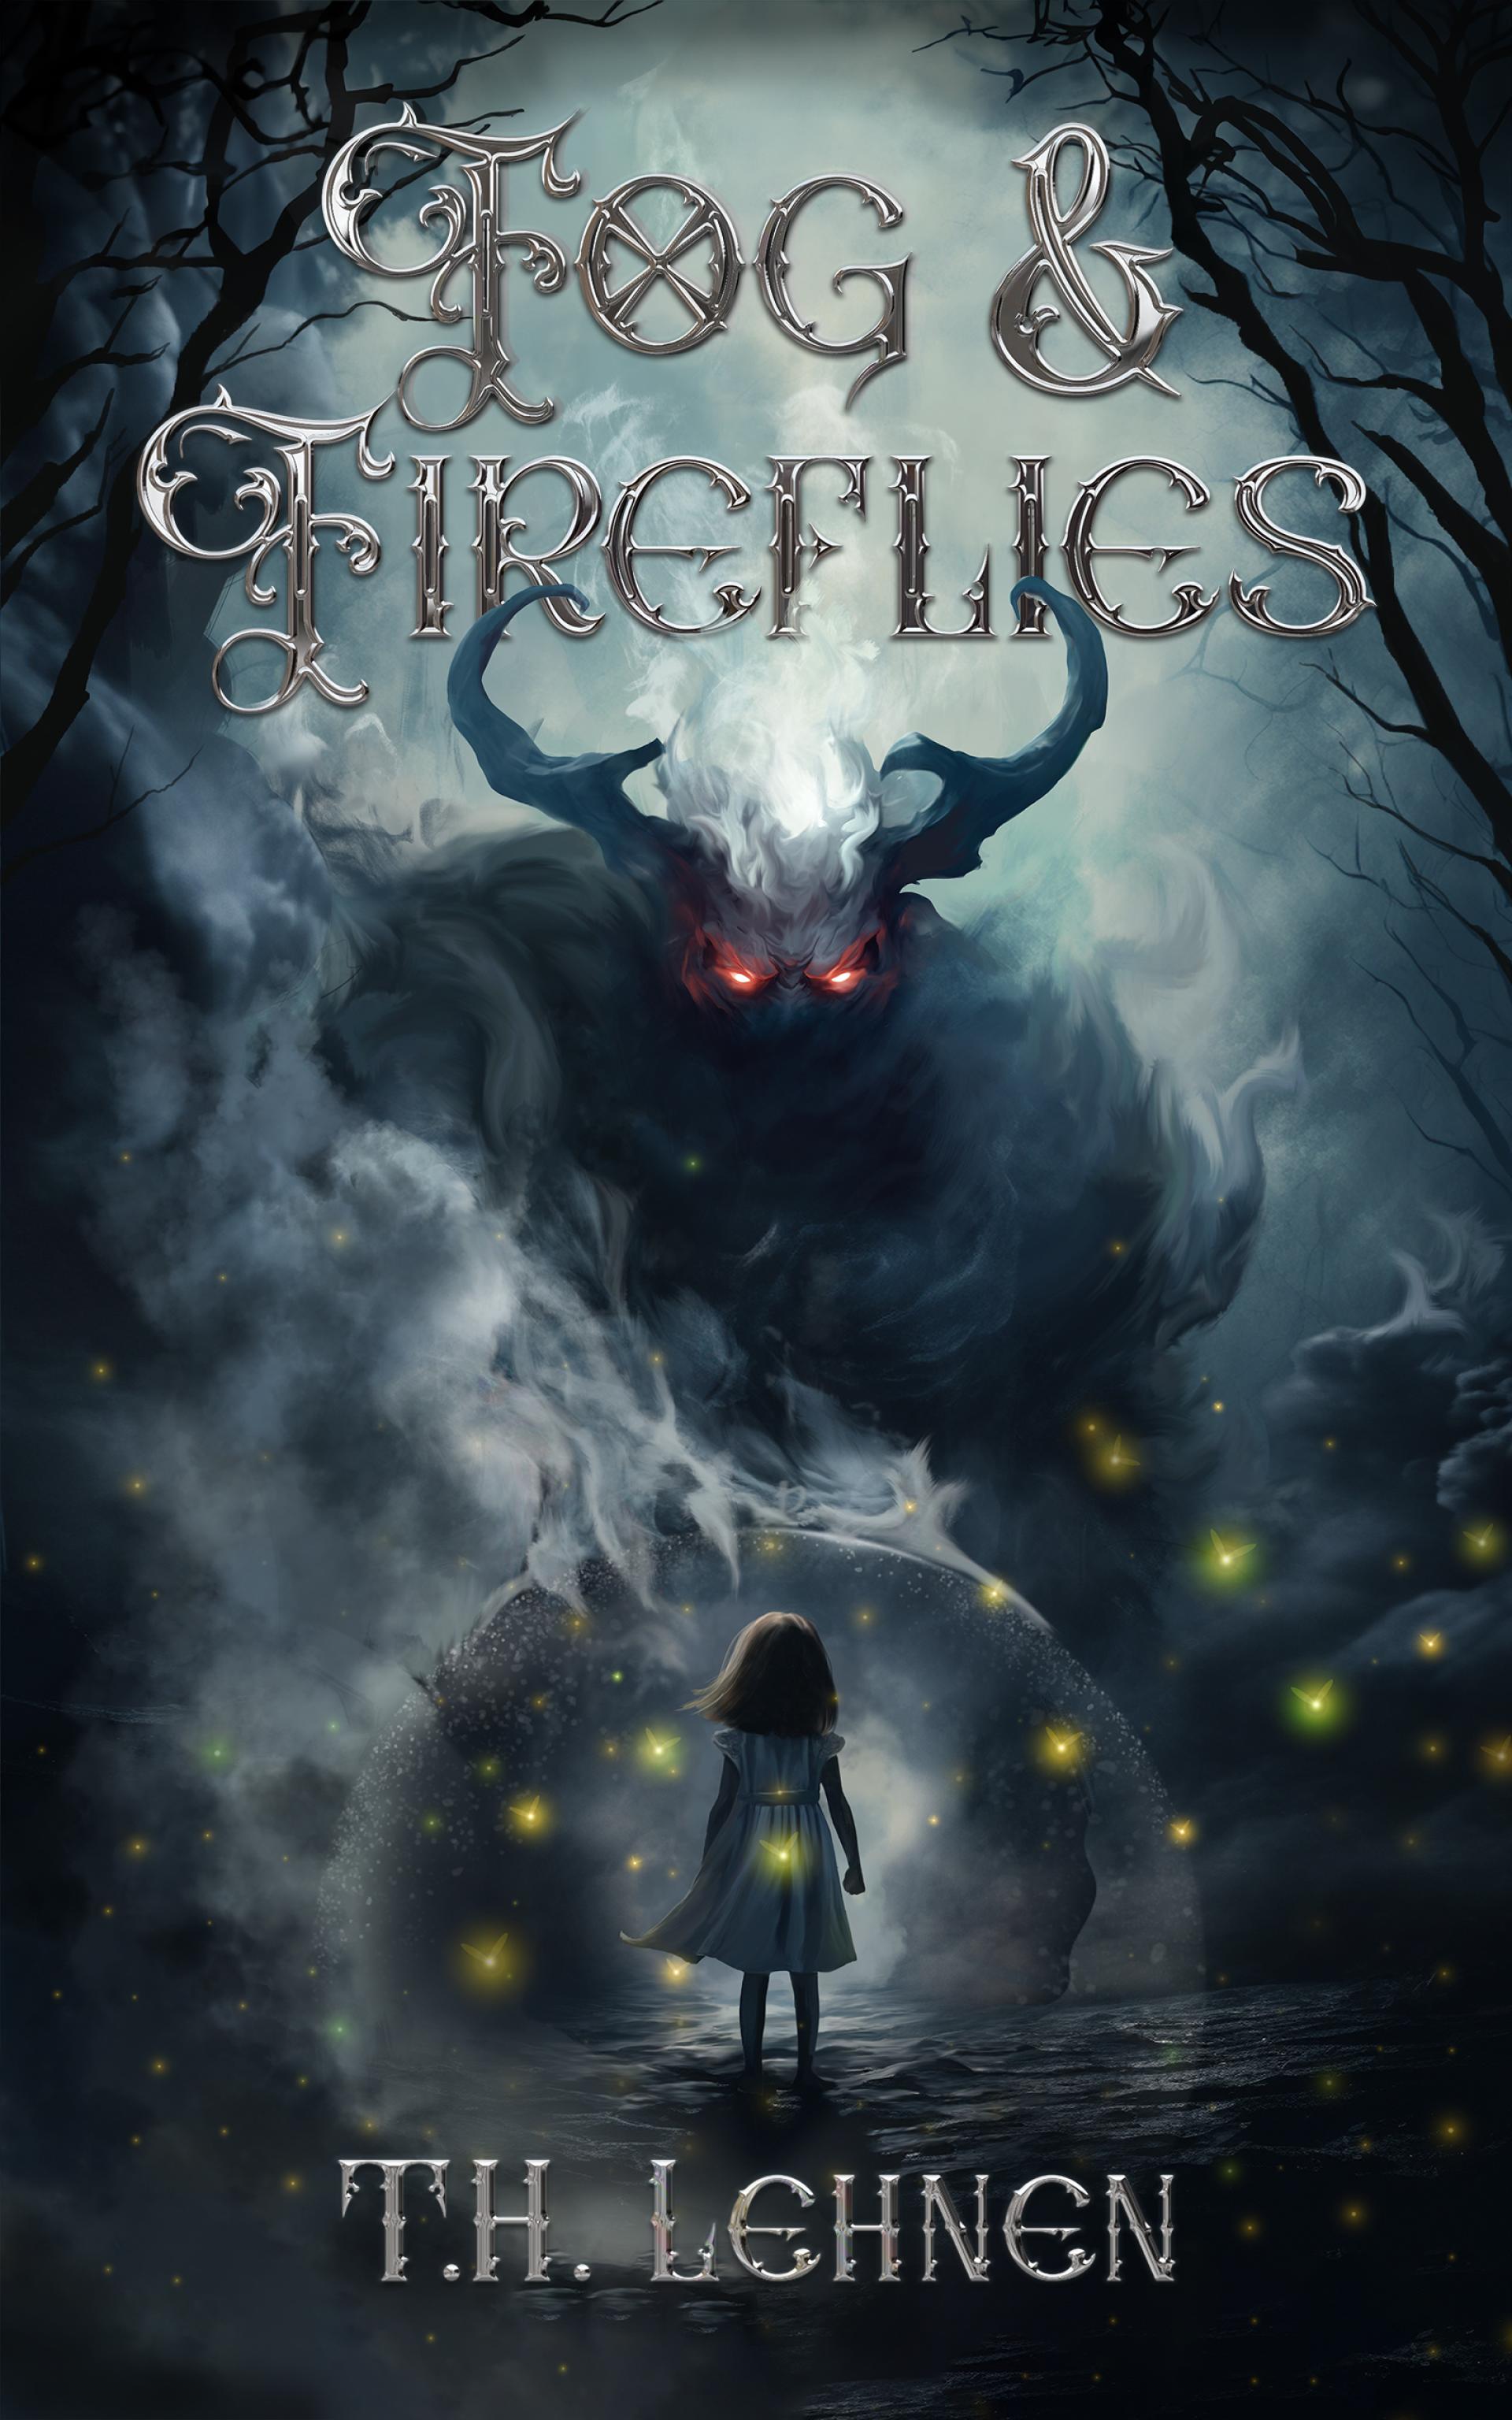 Tim Lehnen Book "Fog and FireFlies" Cover 